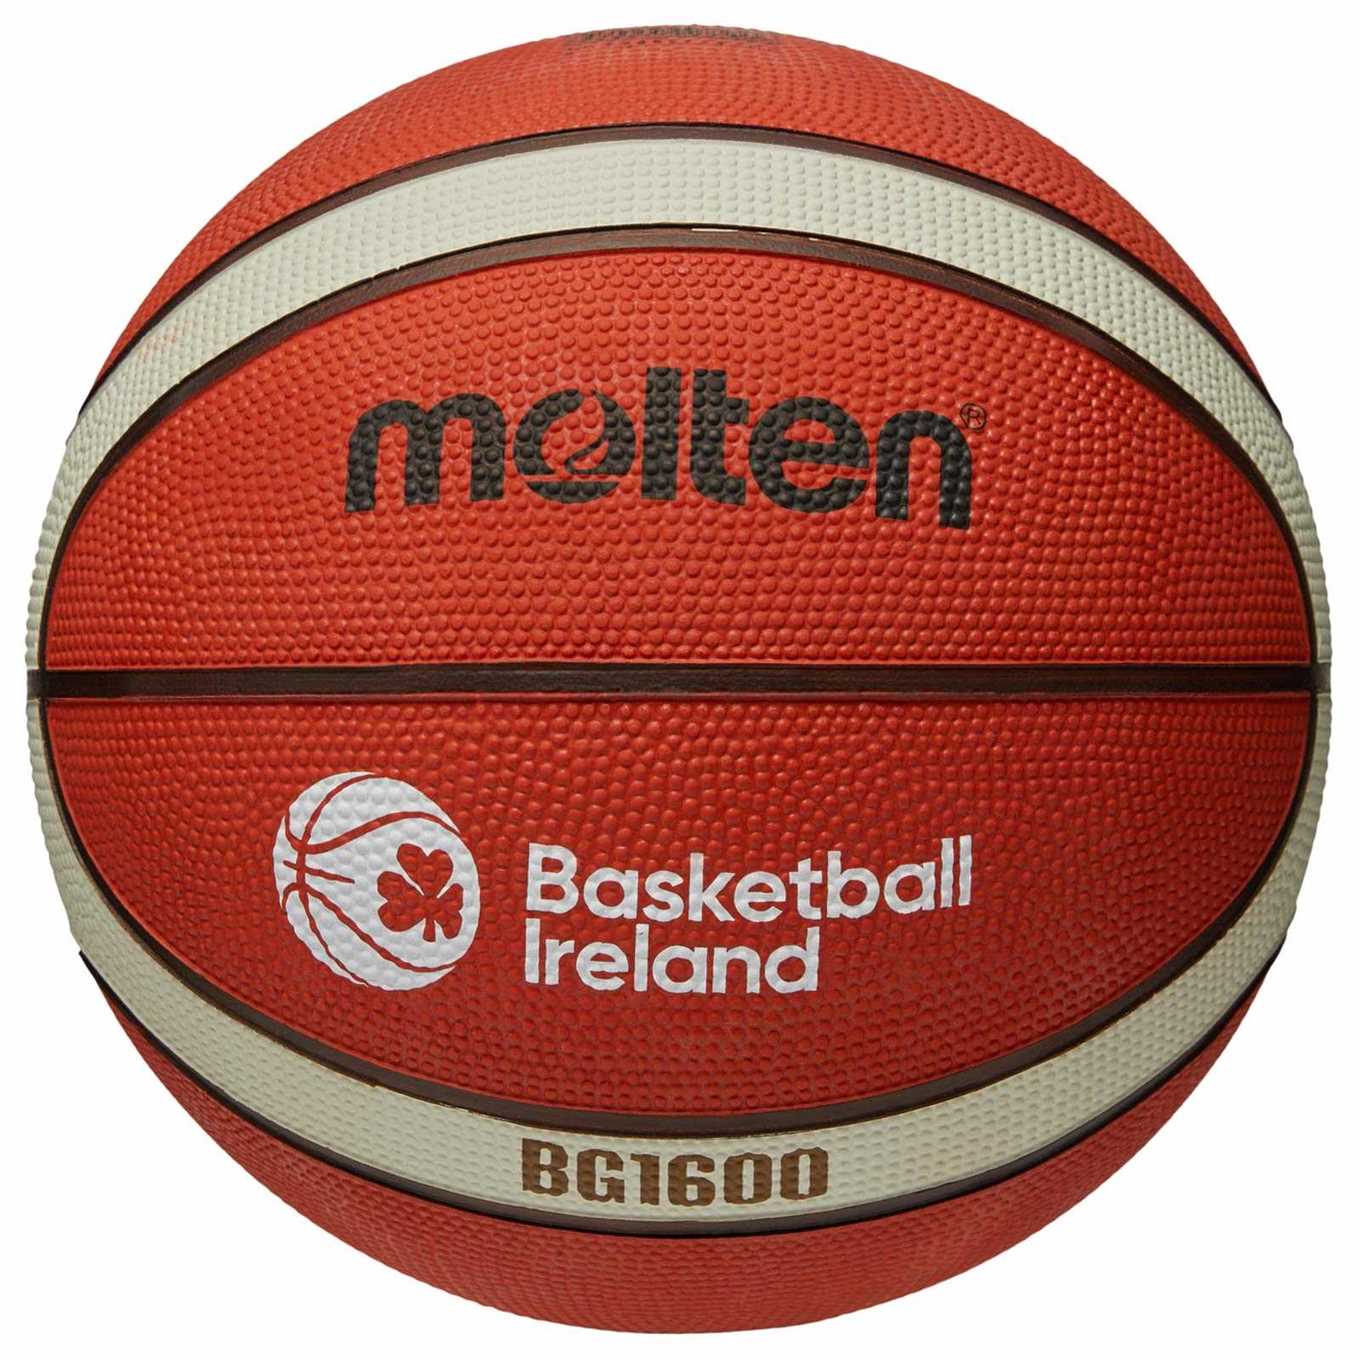 MOLTEN BASKETBALL IRELAND BEGINNERS BASKETBALL - SIZE 6